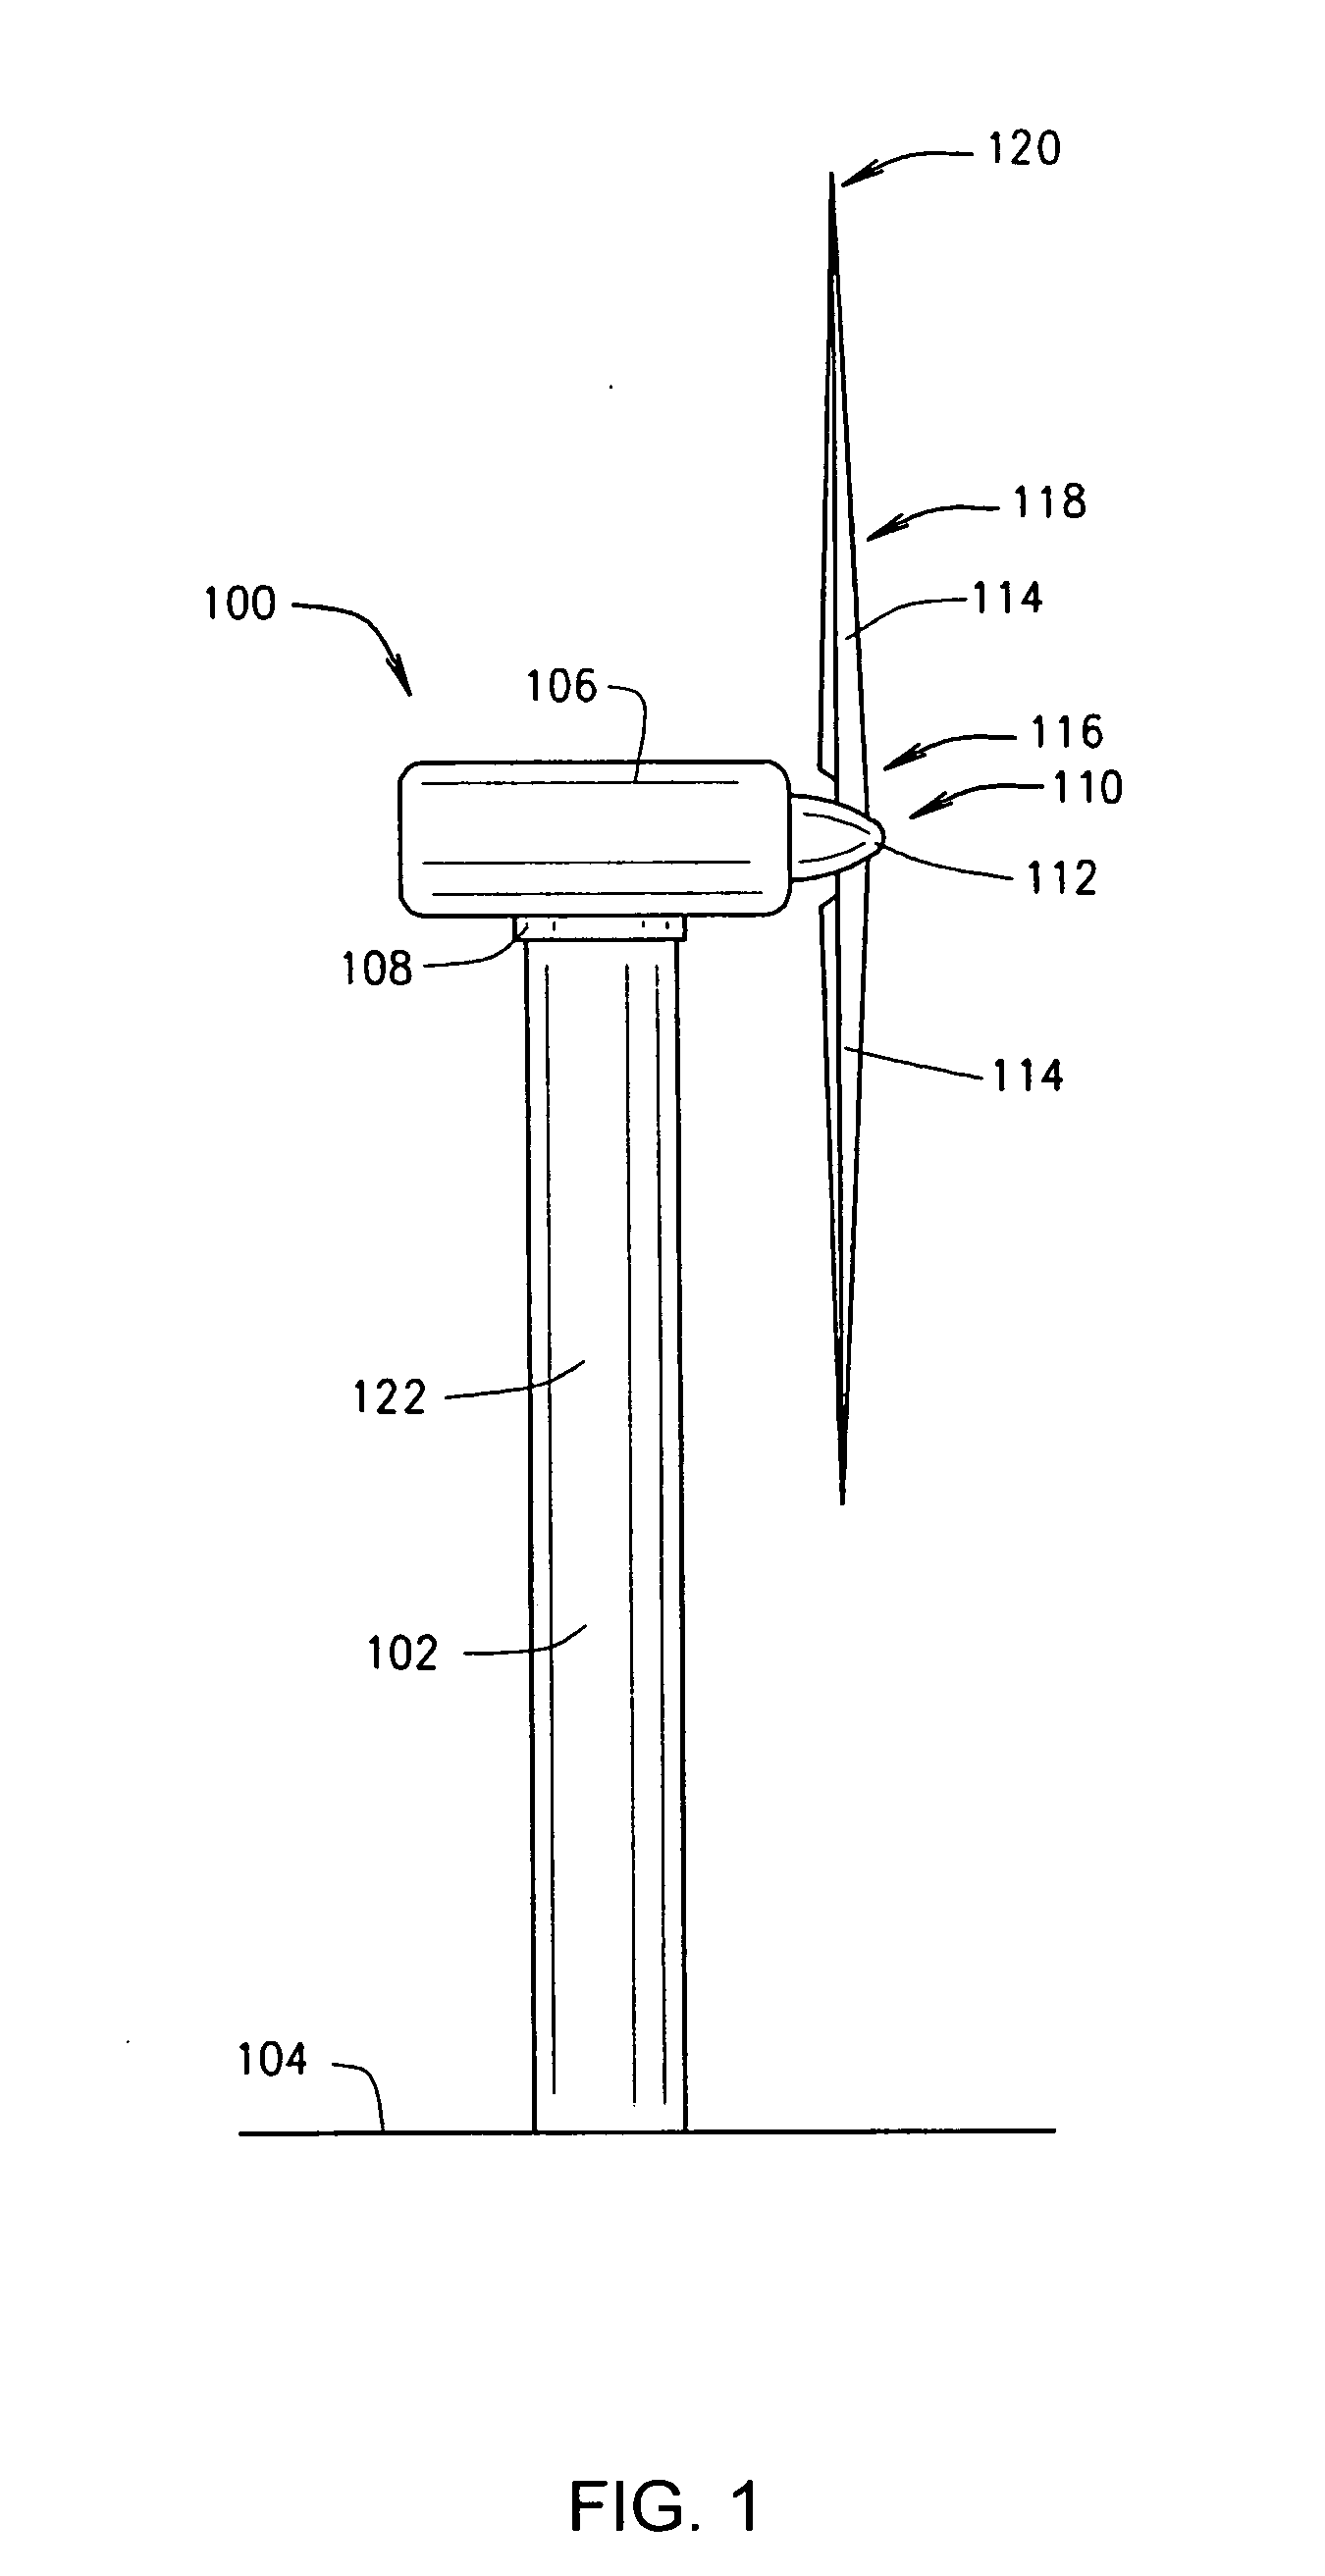 Methods of making wind turbine rotor blades